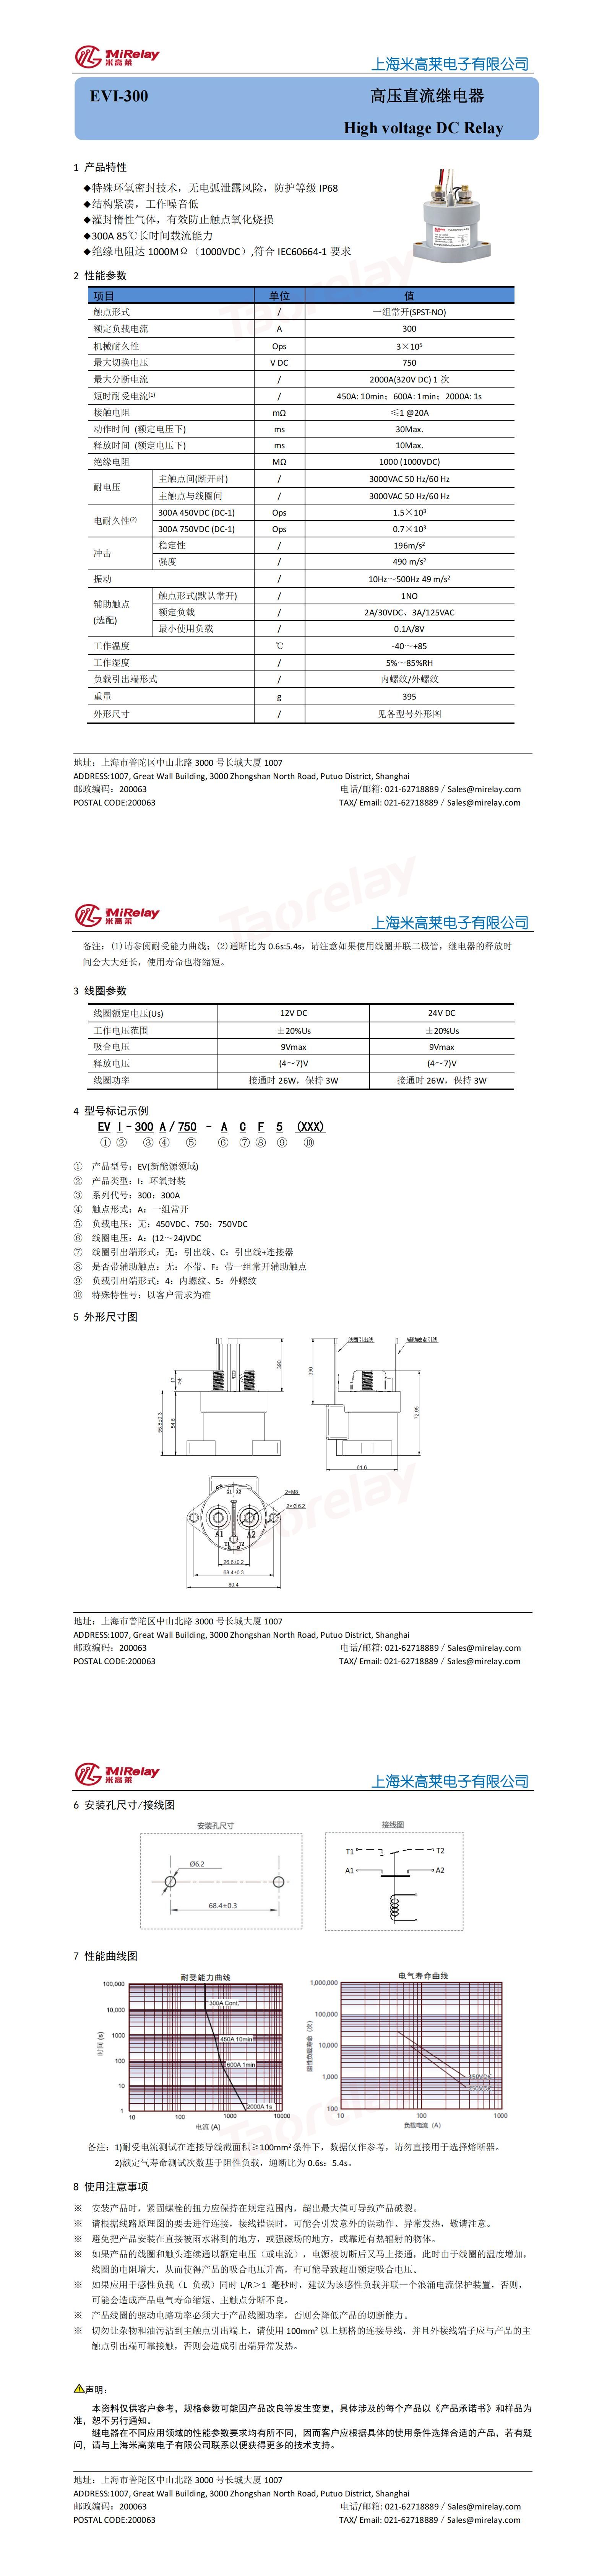 EVI-300高压直流继电器规格书_00.jpg